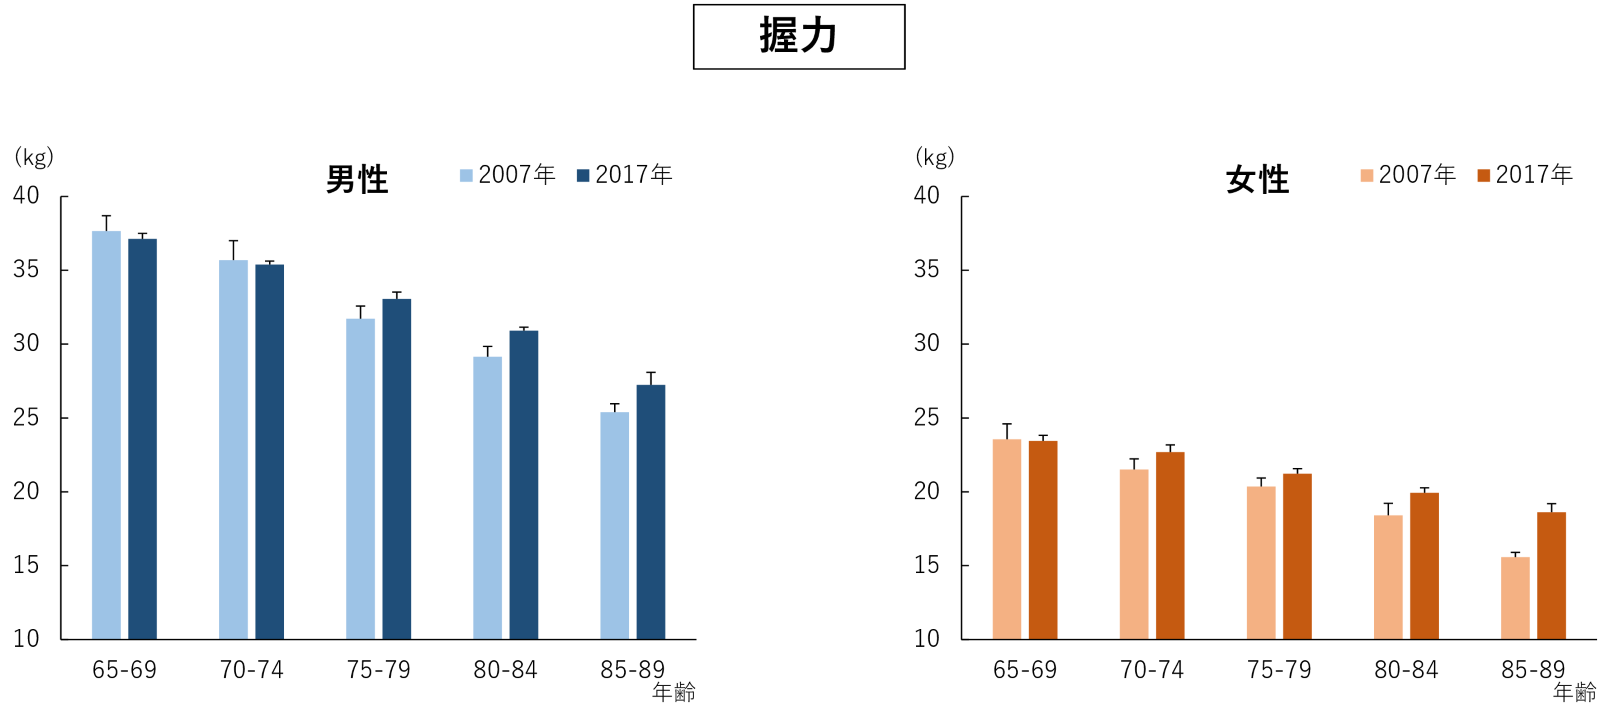 左の図：男性における2007年と2017年の握力を65から69歳、70から74歳、75から79歳、80から84歳、85から89歳それぞれのグループで比較したグラフ。右の図：女性における2007年と2017年の握力を65から69歳、70から74歳、75から79歳、80から84歳、85から89歳それぞれのグループで比較したグラフ。